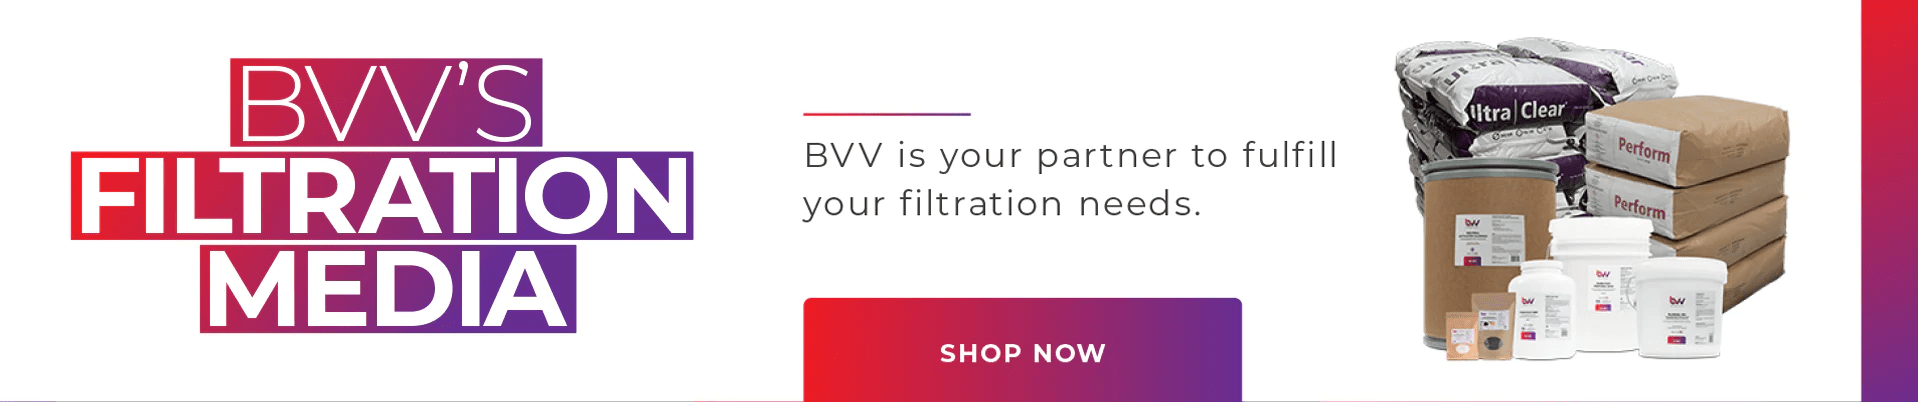 BVV's Filtration Media